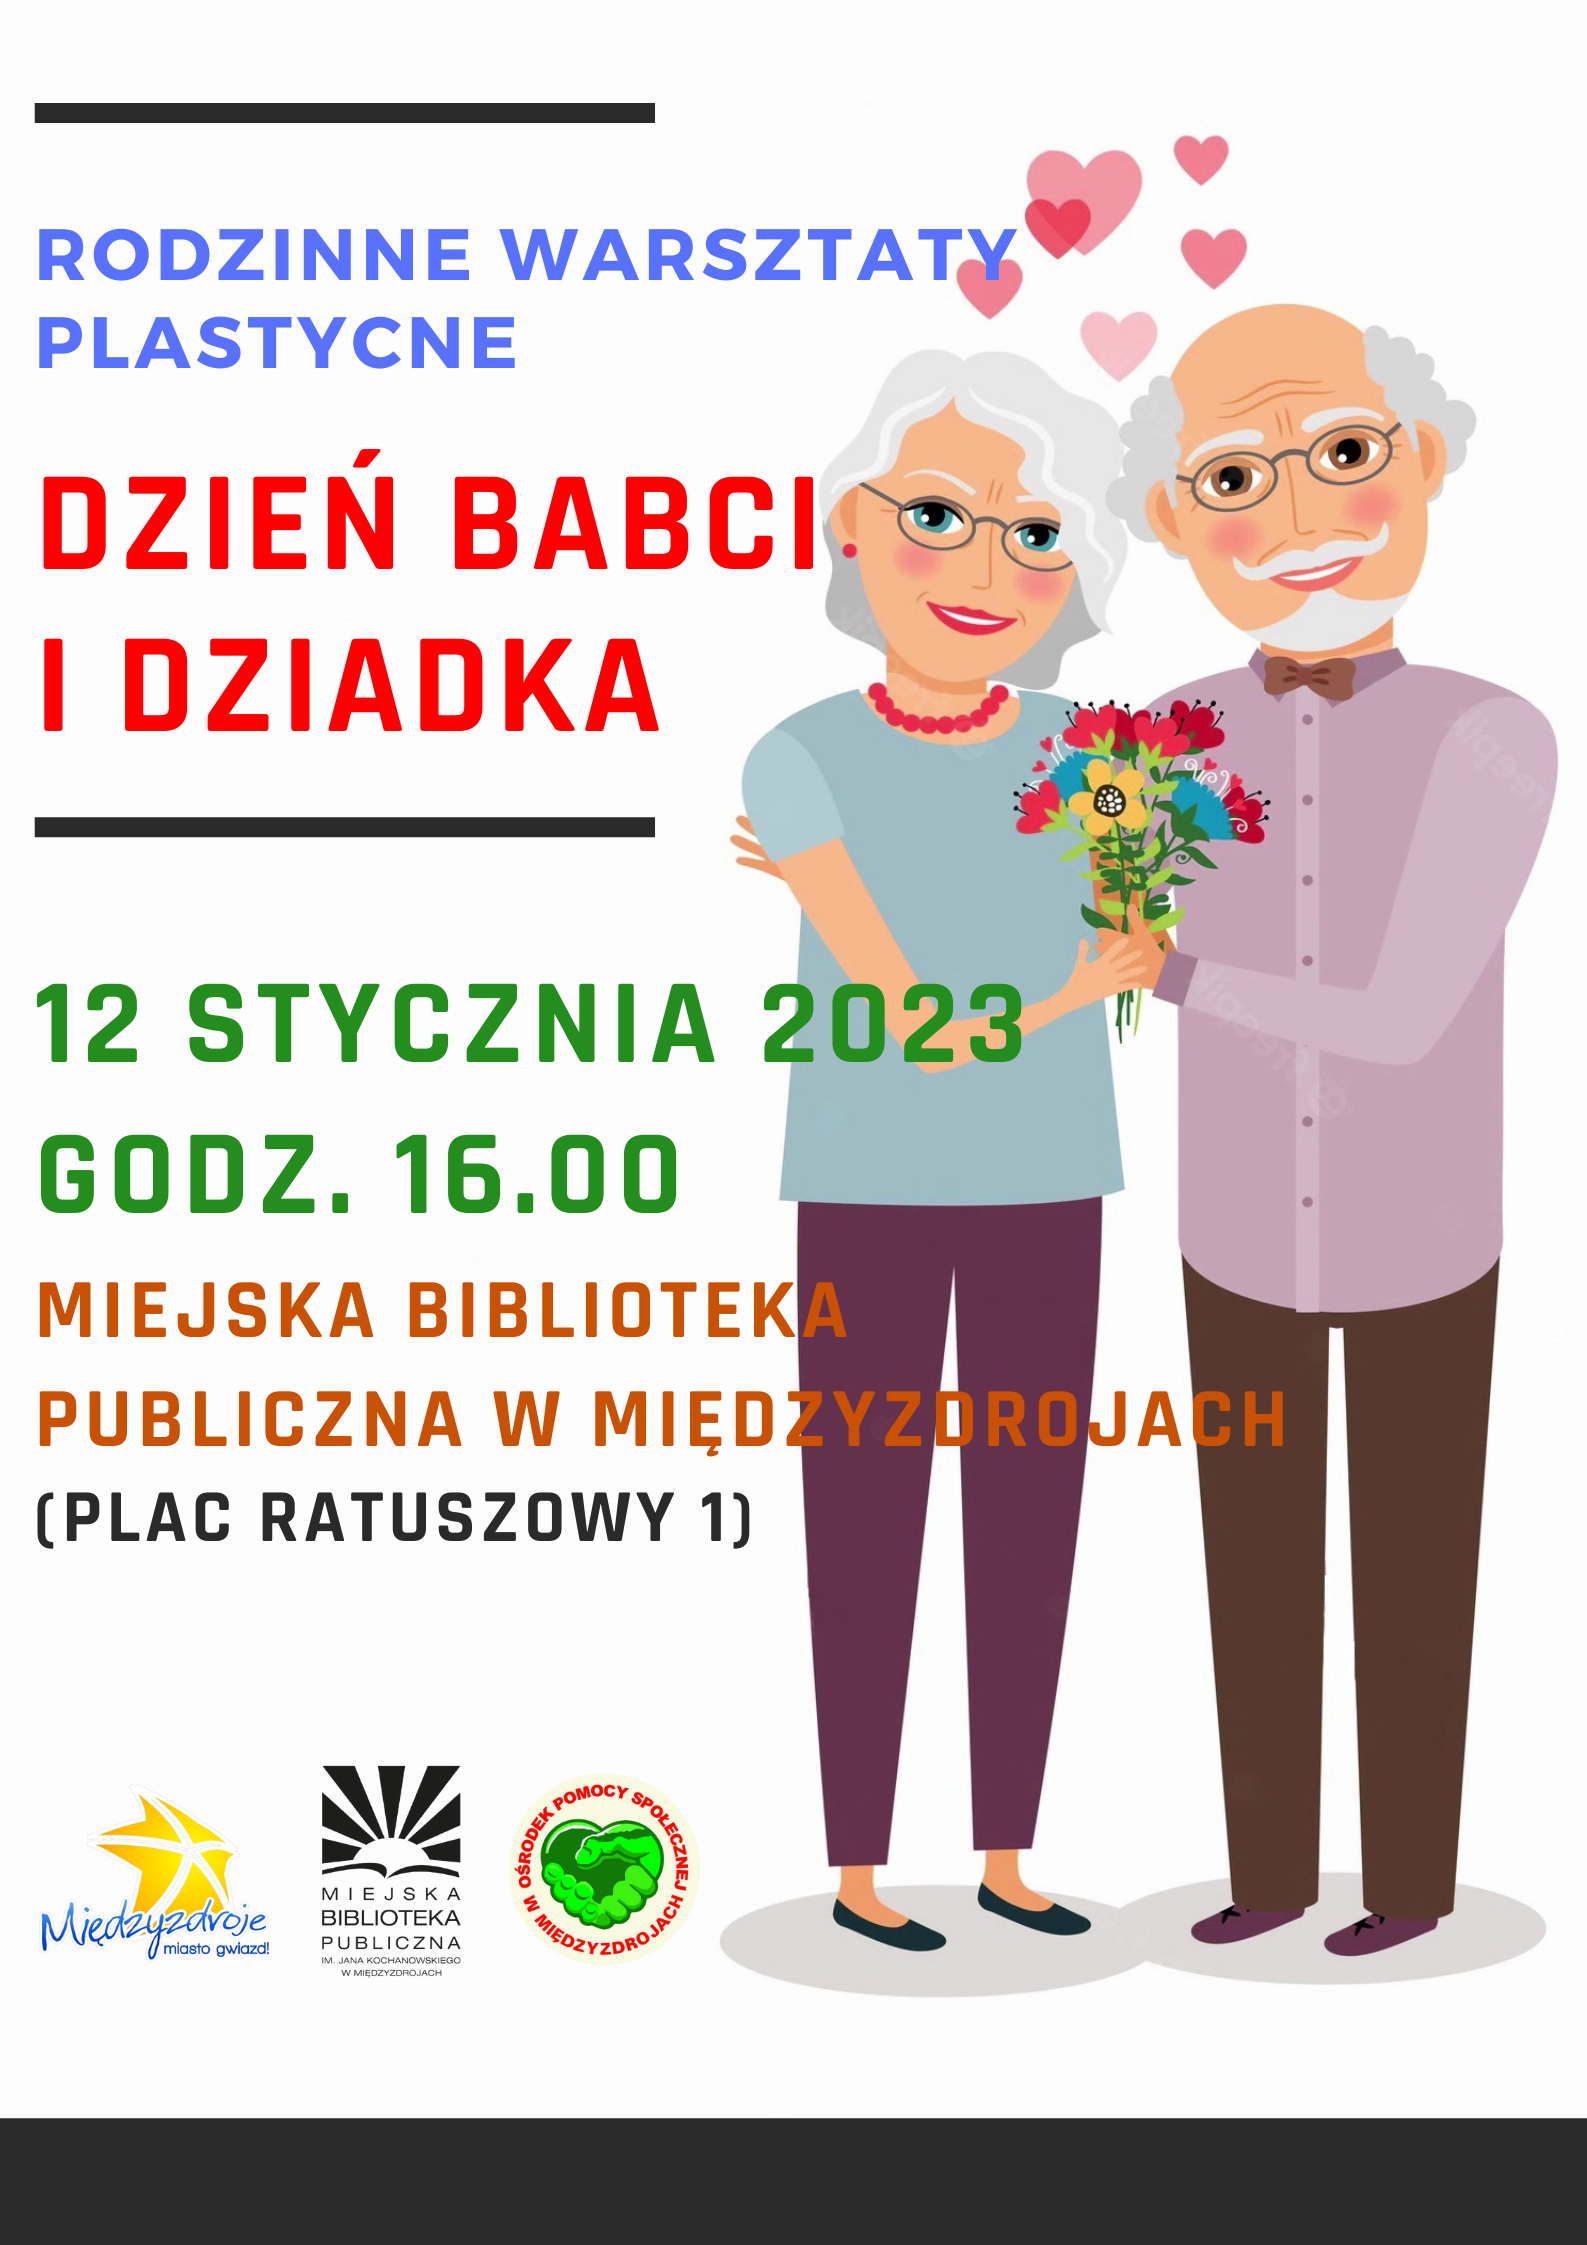 Rodzinne warsztaty plastyczne pt. „Dzień Babci i Dziadka” 12 stycznia 2023 r. - zapowiedź